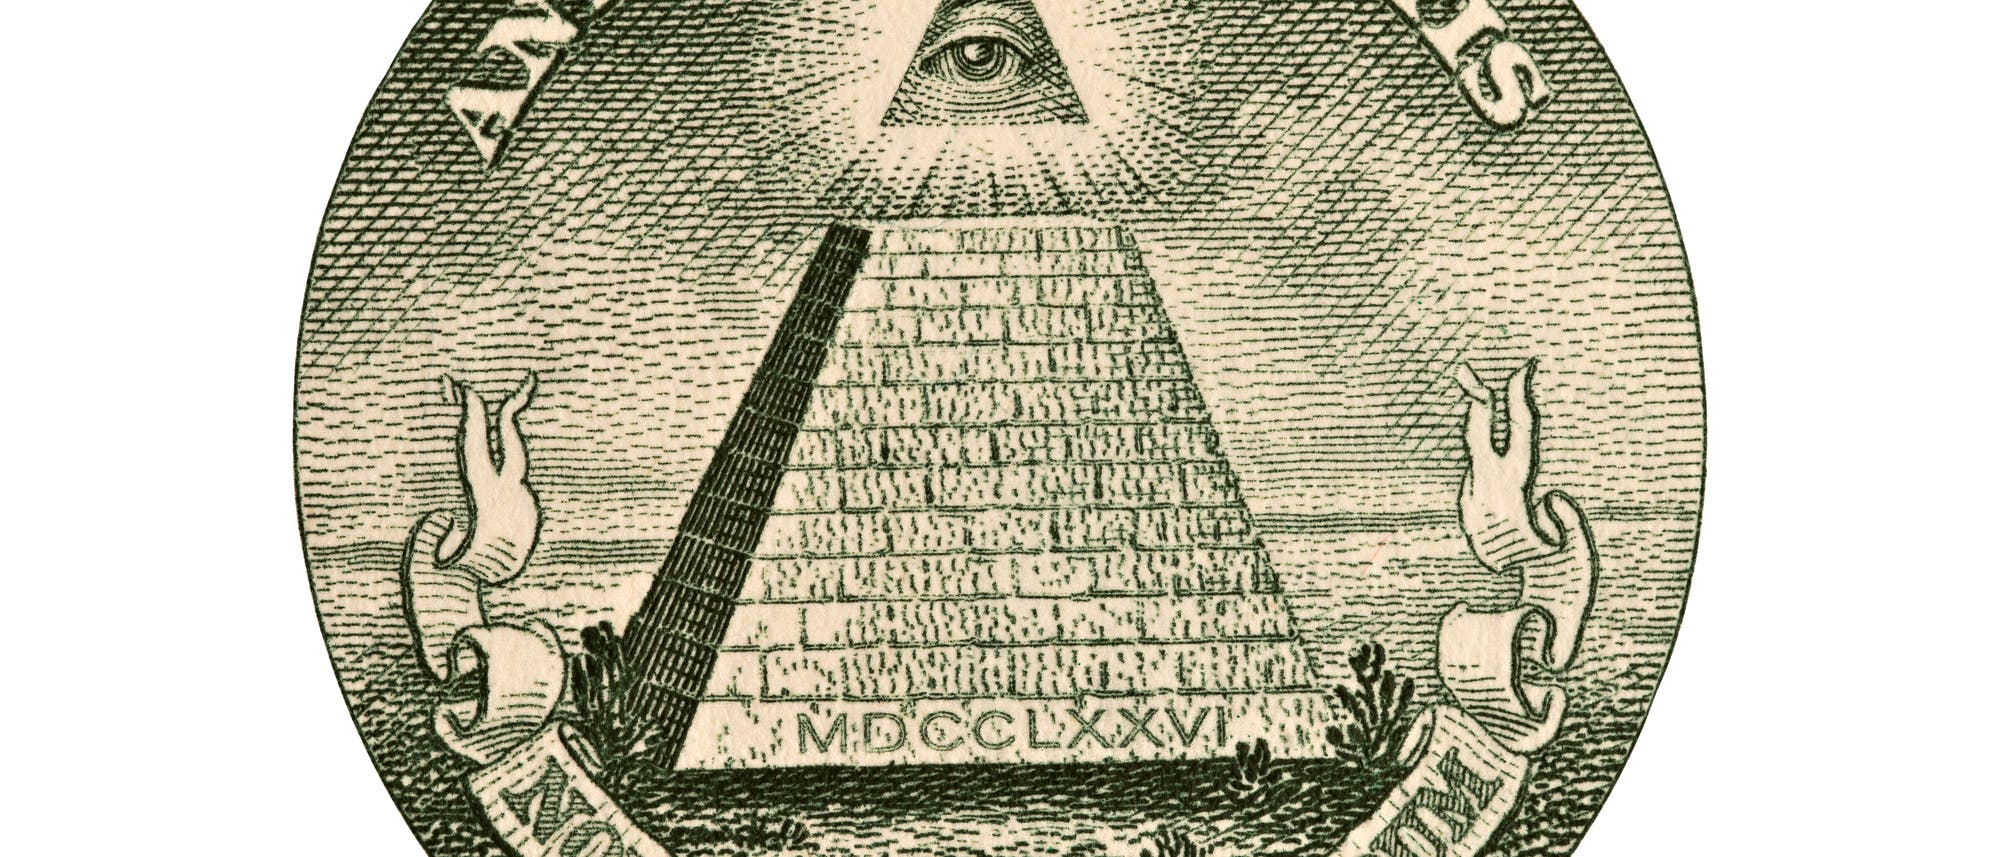 Dollarnote mit vermeintlichem "Illuminati"-Siegel 